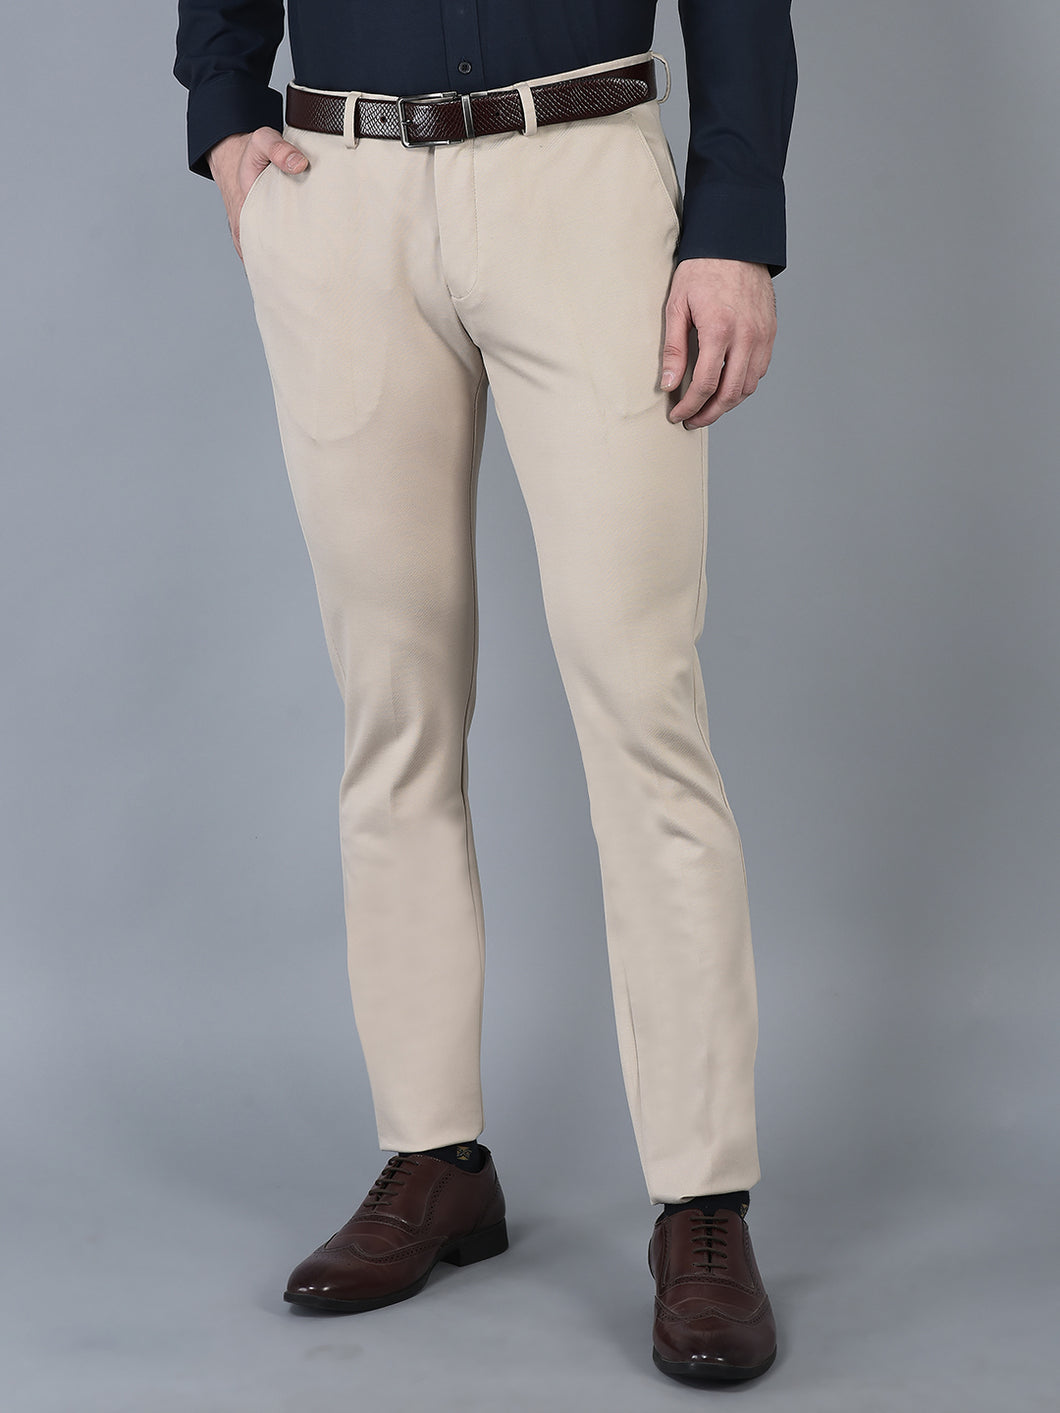 CANOE MEN Formal Trouser  Beige Color